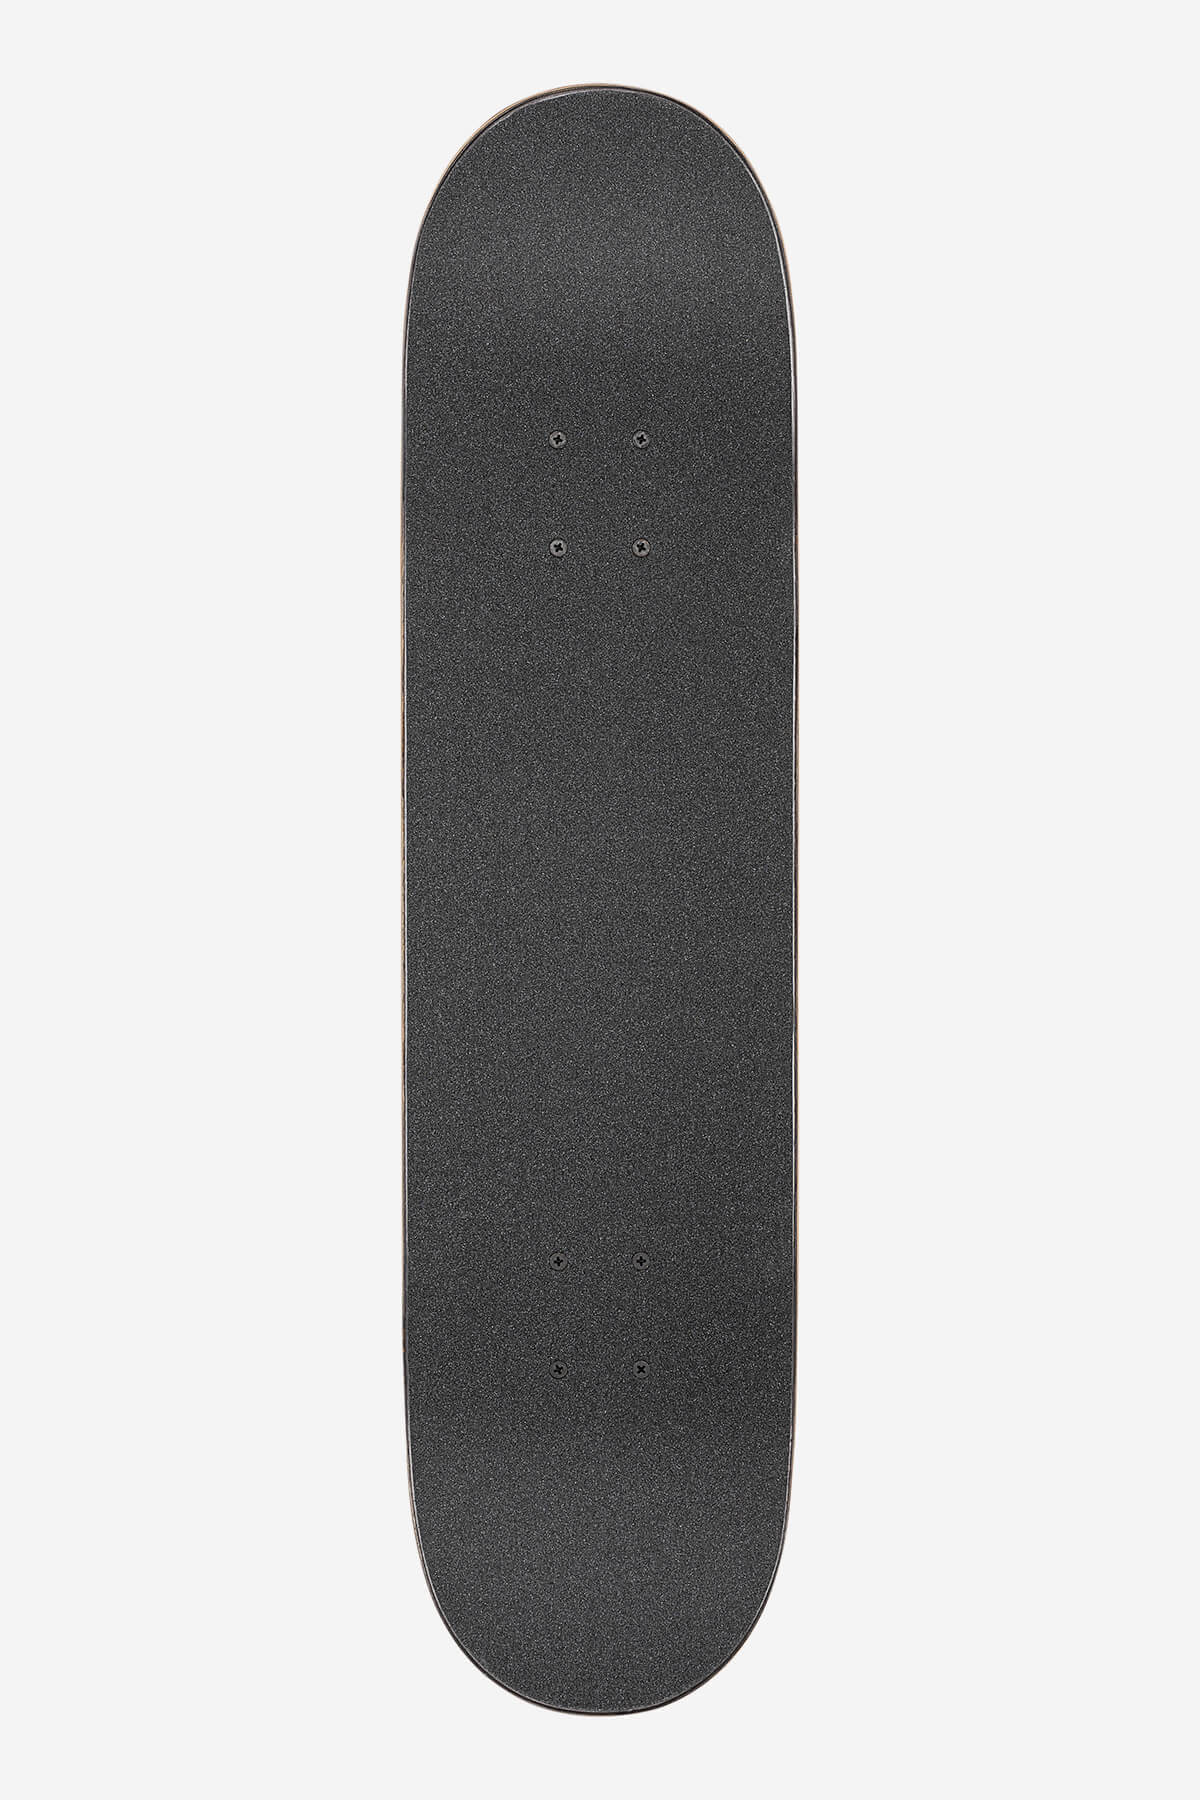 Globe - G1 Ablaze - Tie Dye - 7.75" Complete Skateboard